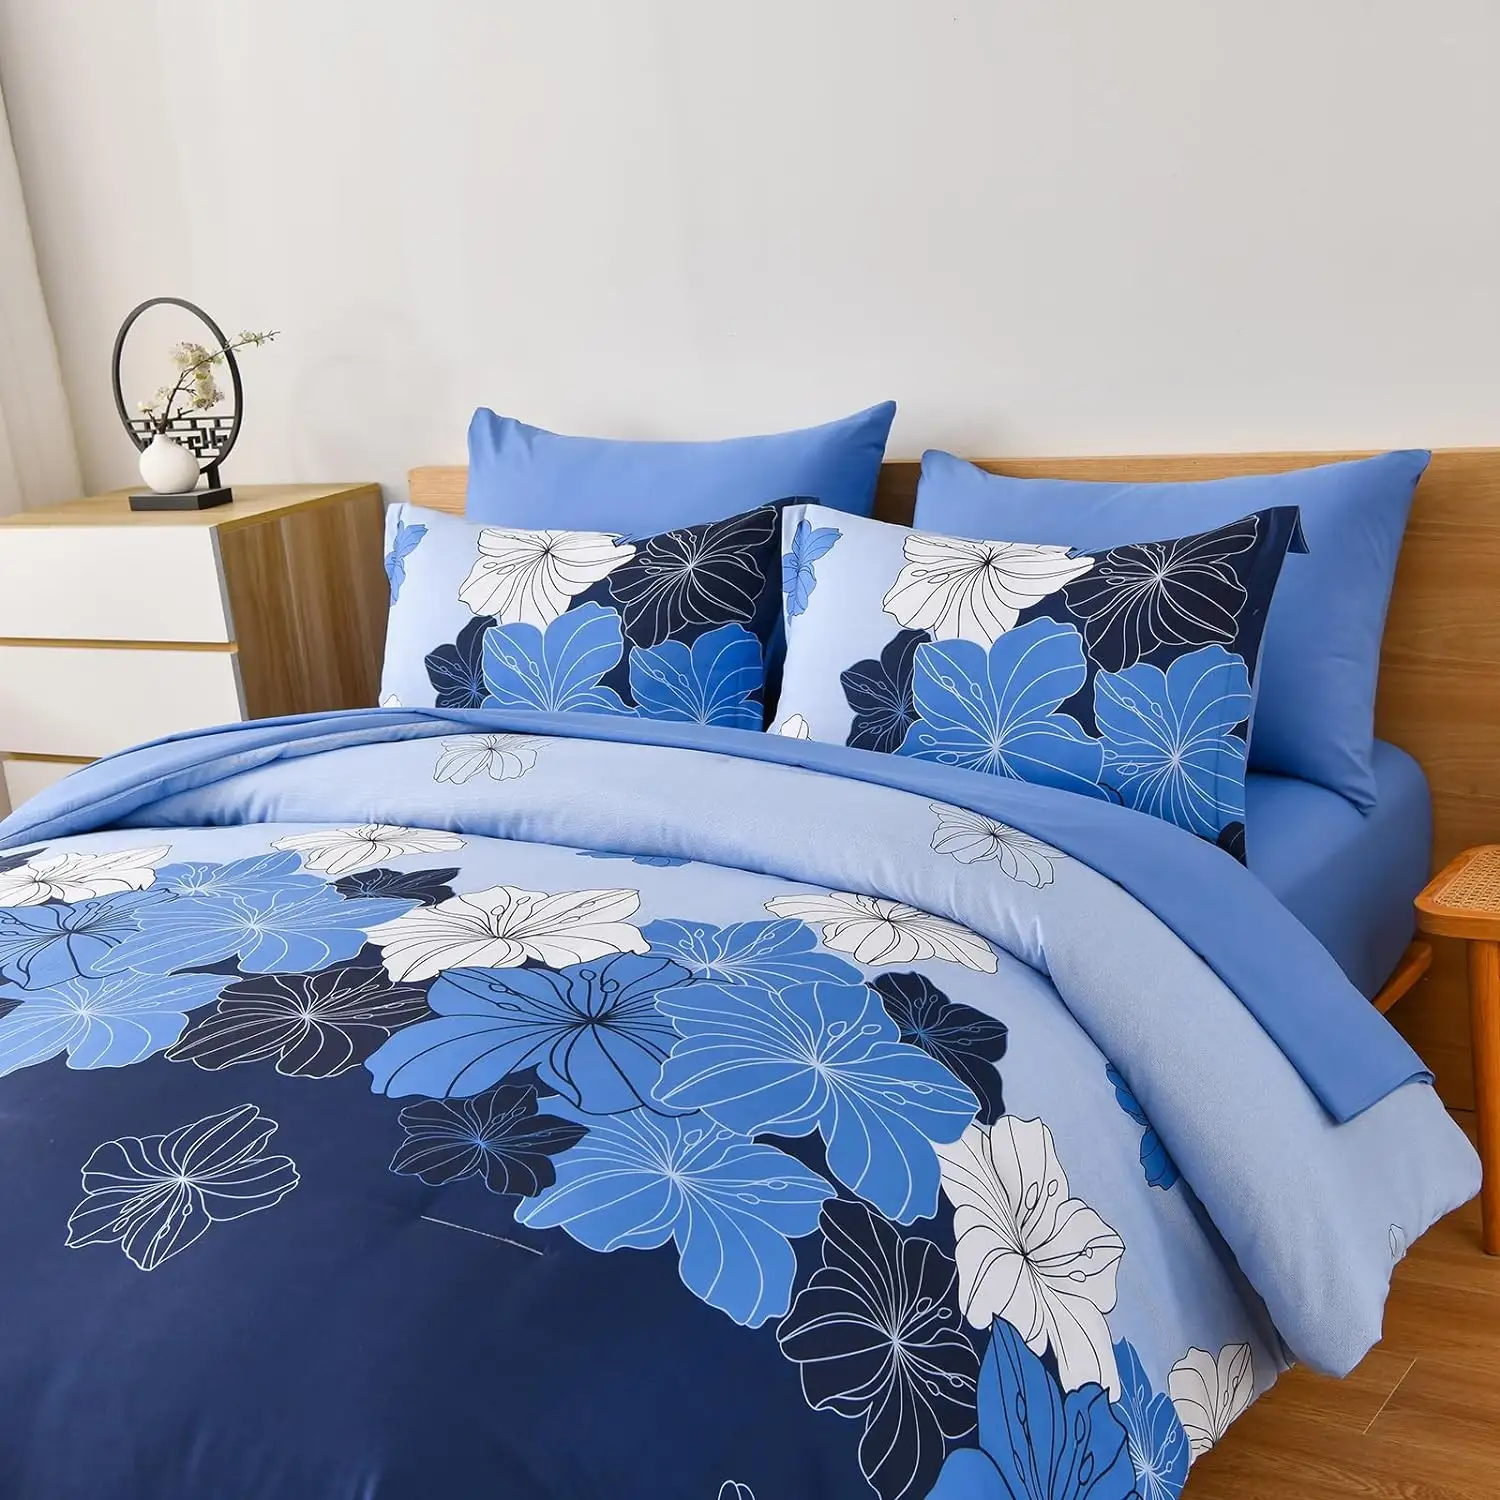 मुलायम माइक्रोफाइबर बिस्तर के लिए नीले रंग की रानी आराम से बिस्तर के लिए एक बैग में 7 टुकड़े बिस्तर